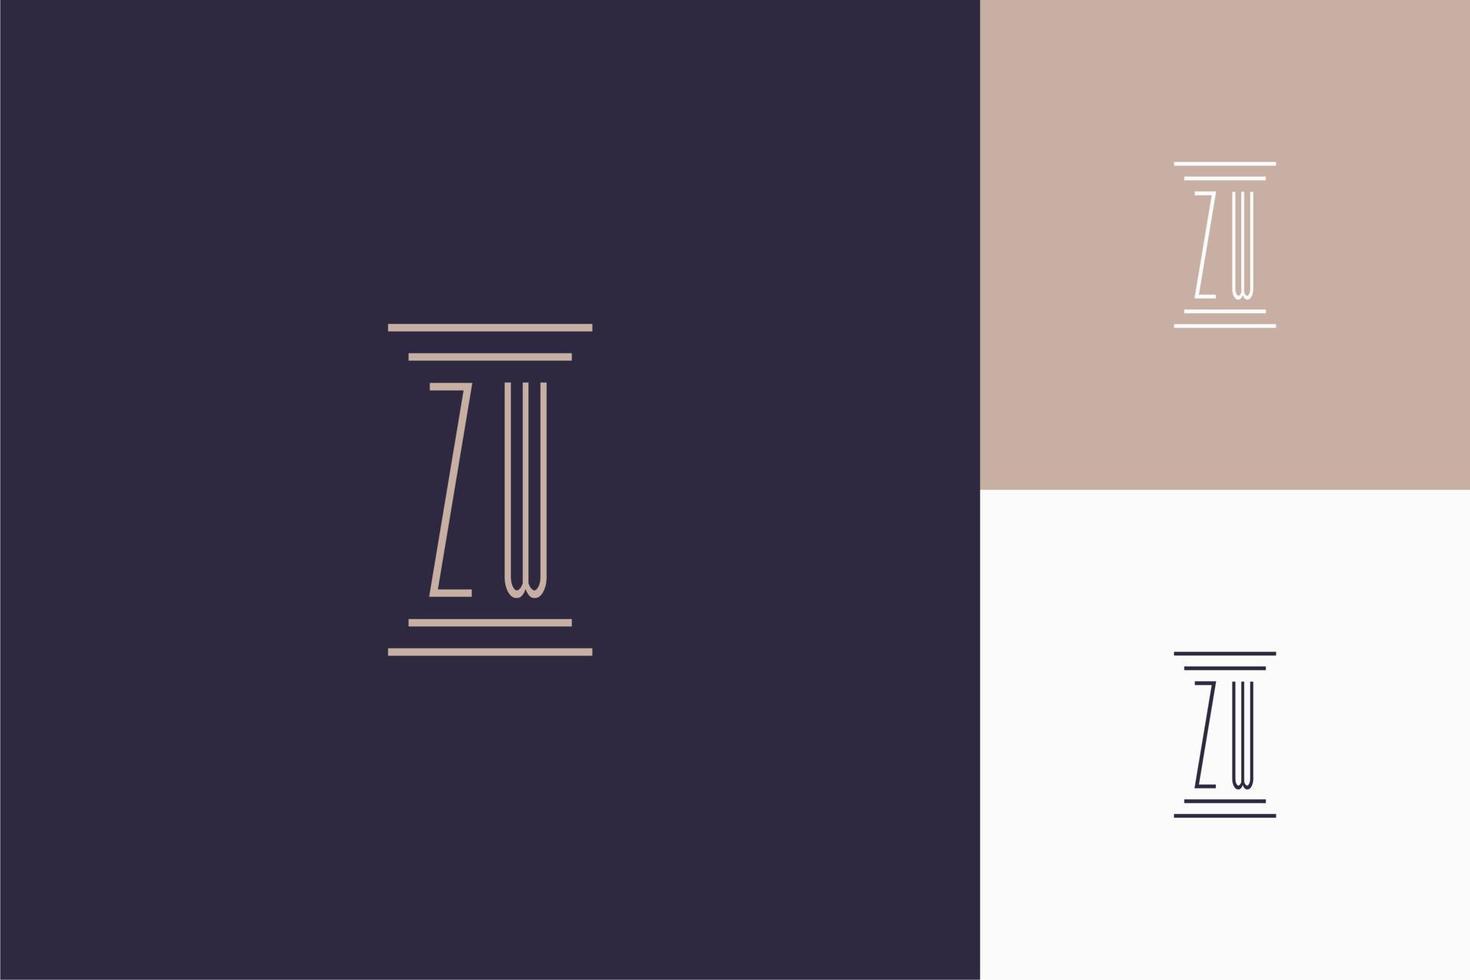 conception des initiales du monogramme zw pour le logo du cabinet d'avocats vecteur